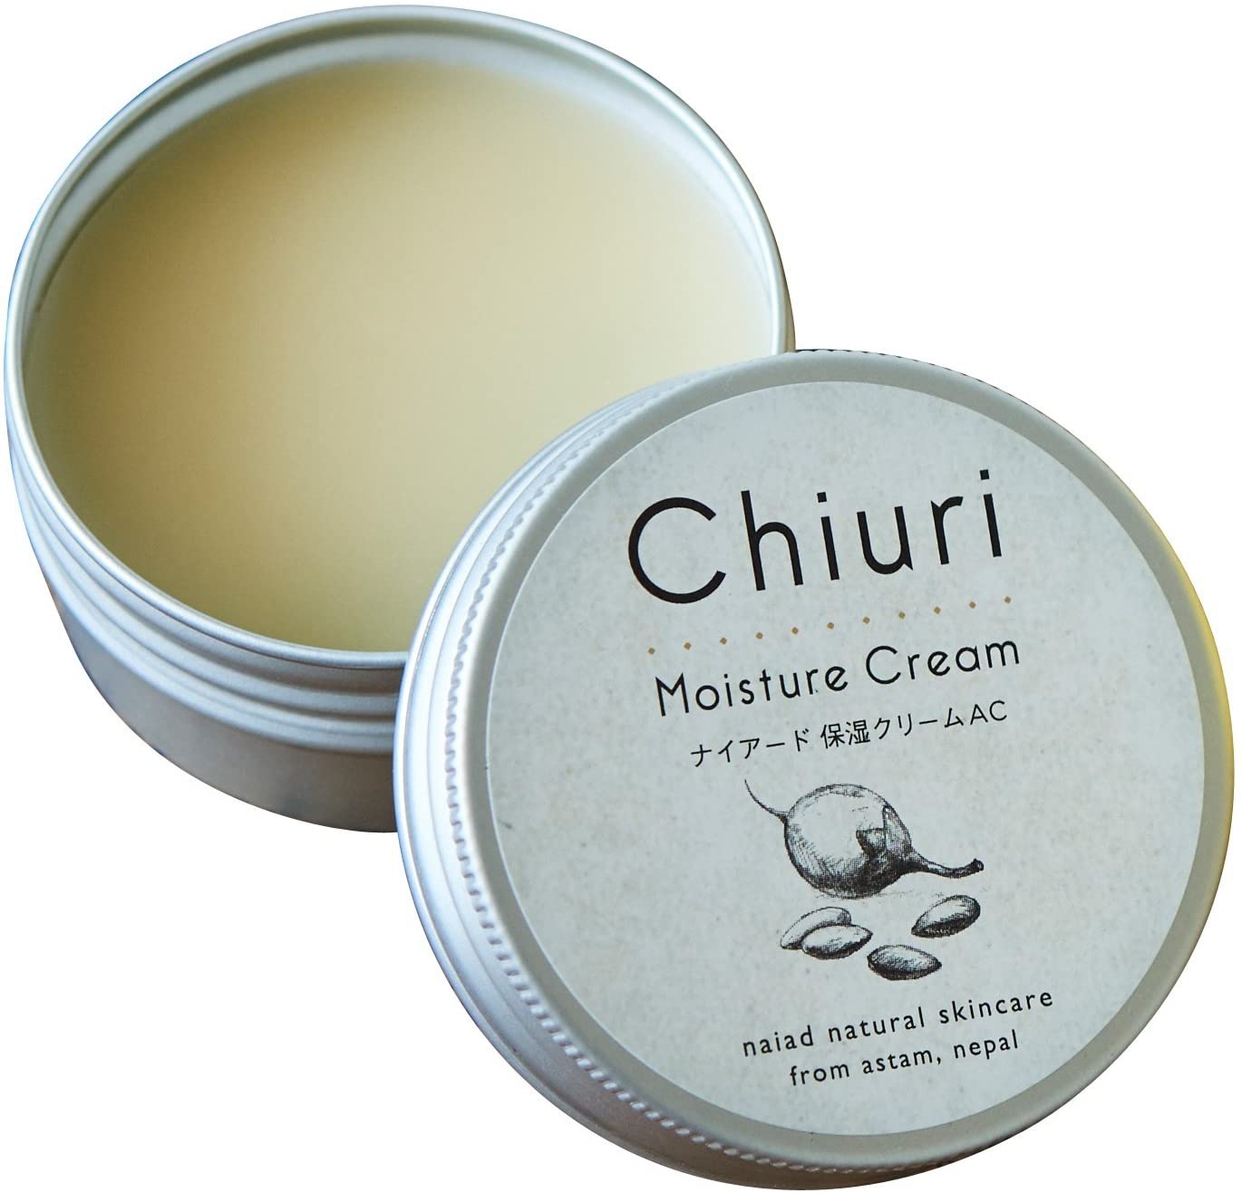 Chiuri(チウリ) モイスチャークリームの商品画像1 